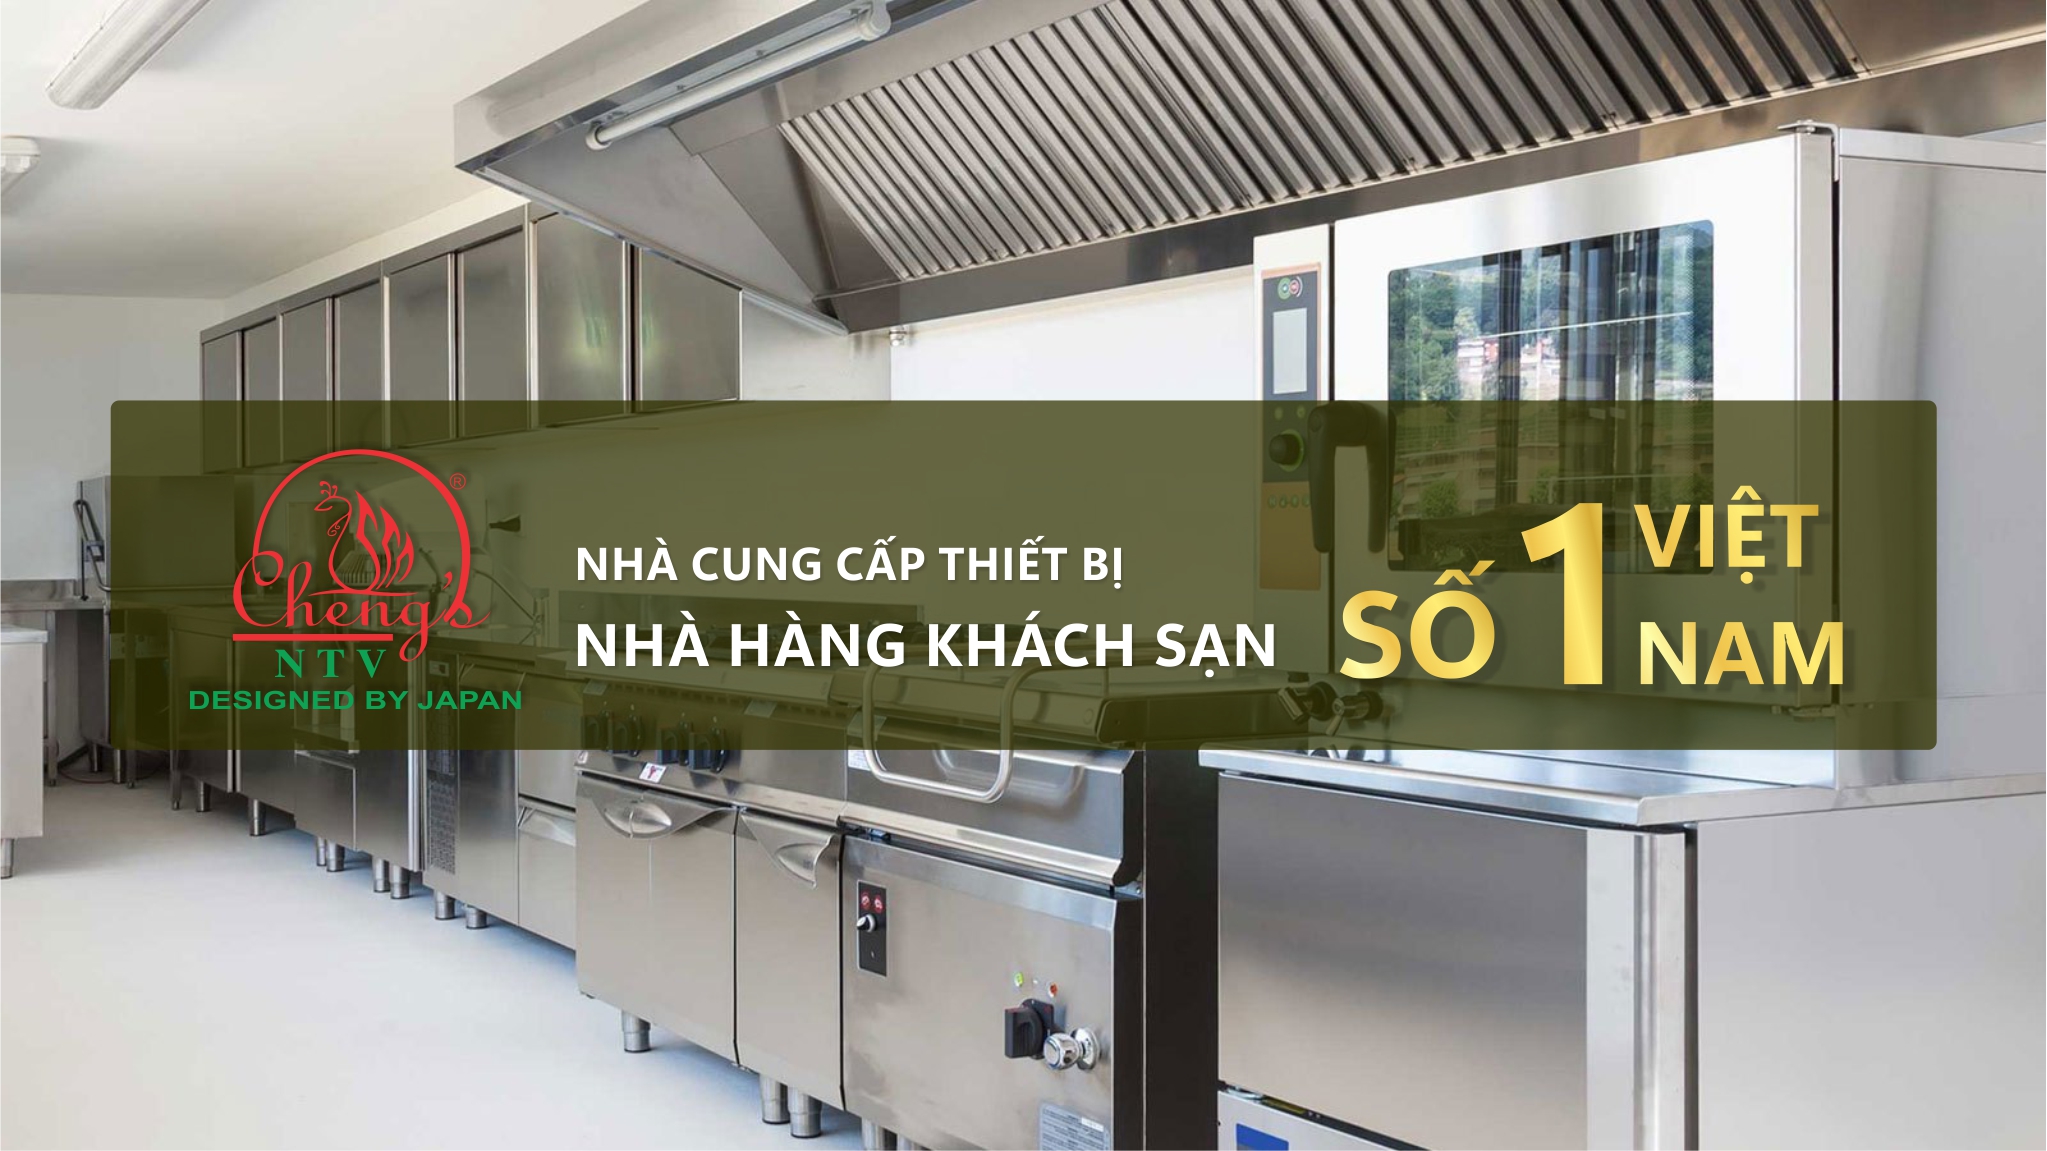 NTV Chengs - Nhà cung cấp thiết bị nhà hàng khách sạn Số 1 Việt Nam